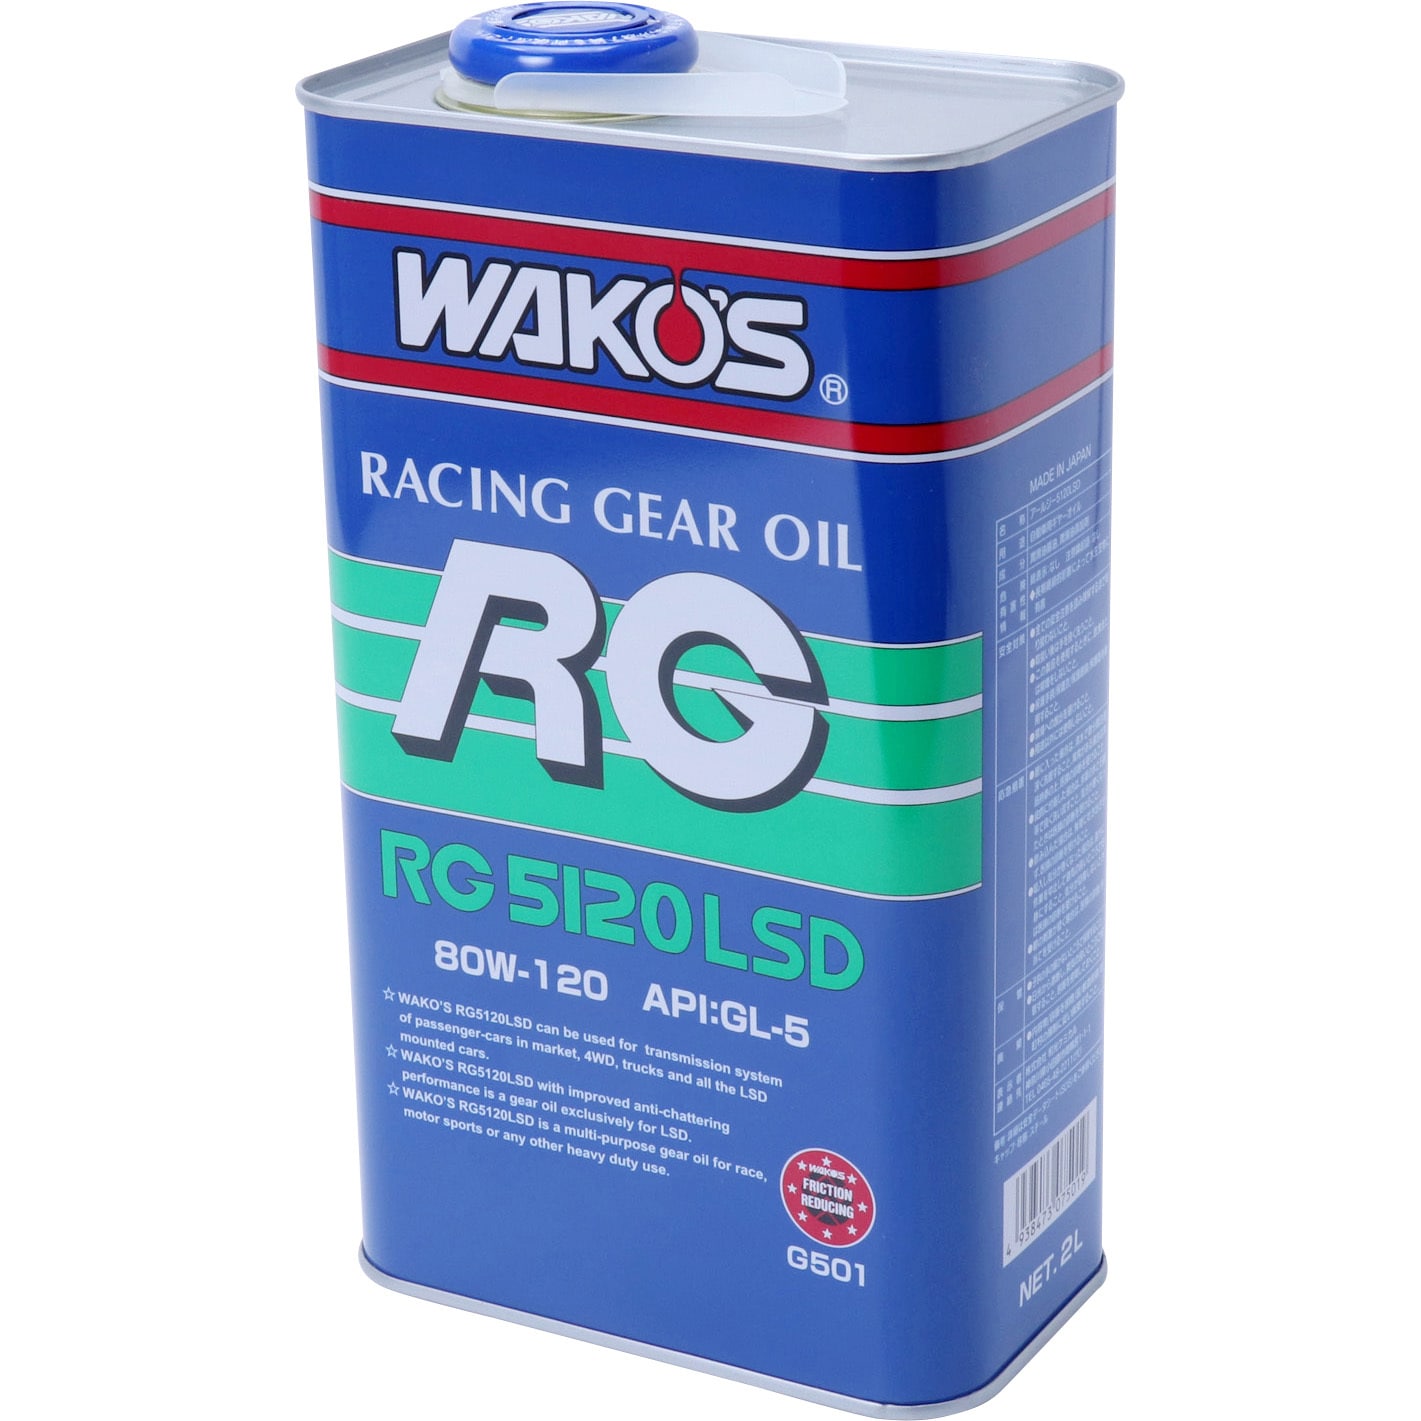 G501 ギヤオイル RG5120LSD 1本(2L) WAKO'S(ワコーズ) 【通販モノタロウ】